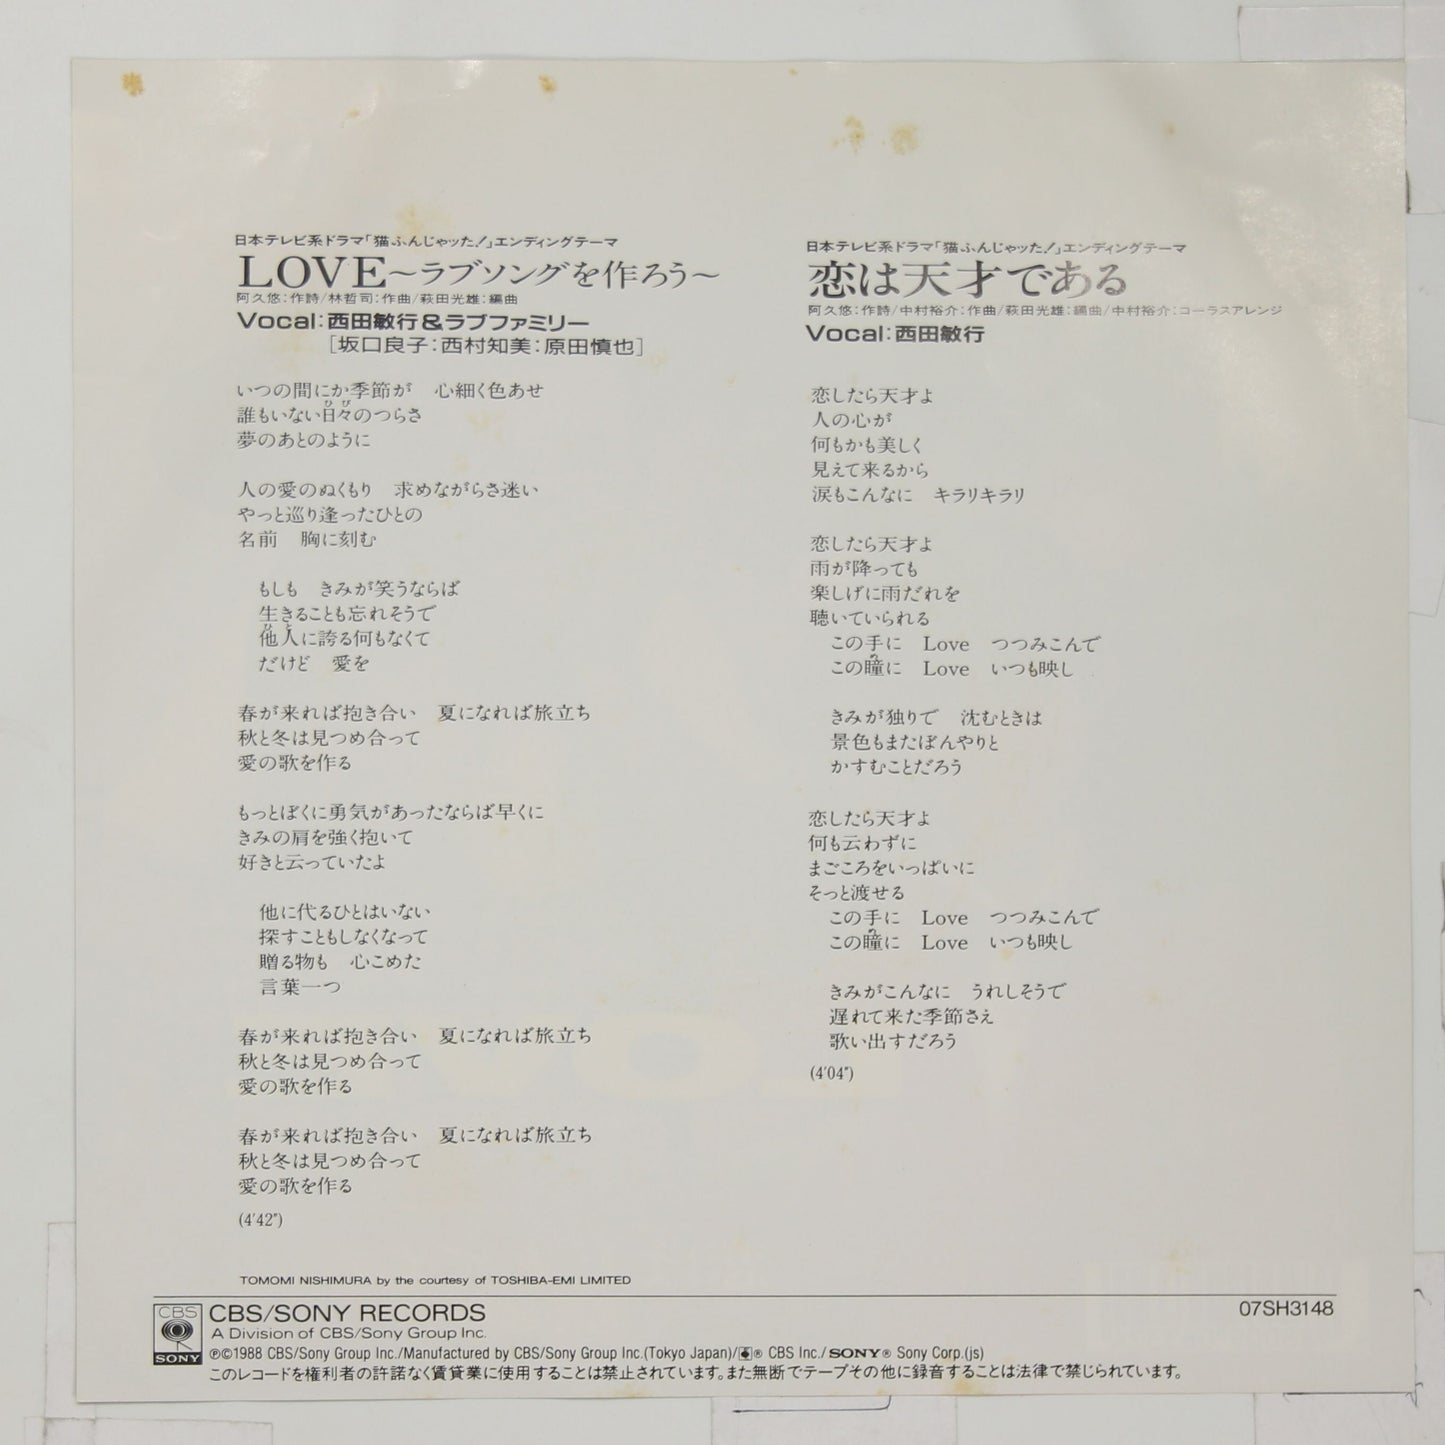 西田敏行&ラブファミリー / LOVE